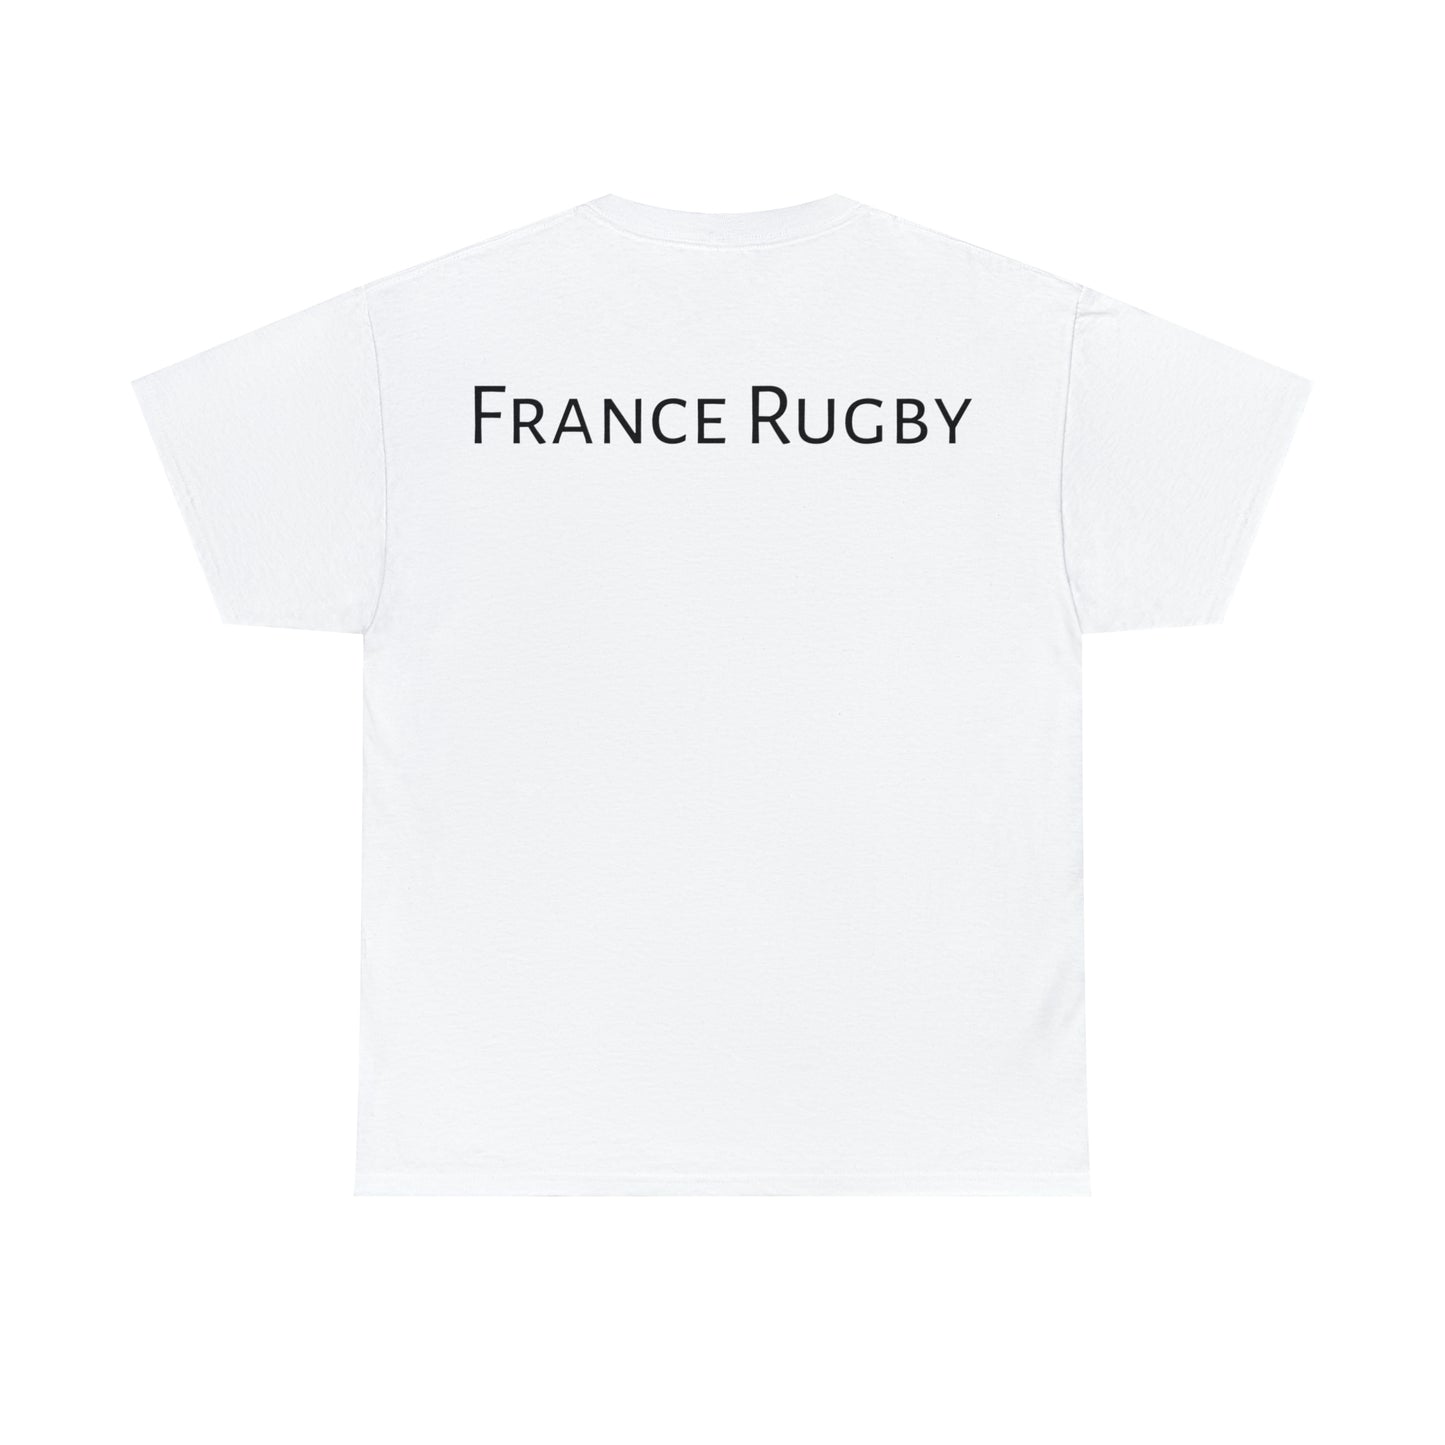 Post Match France - light shirt